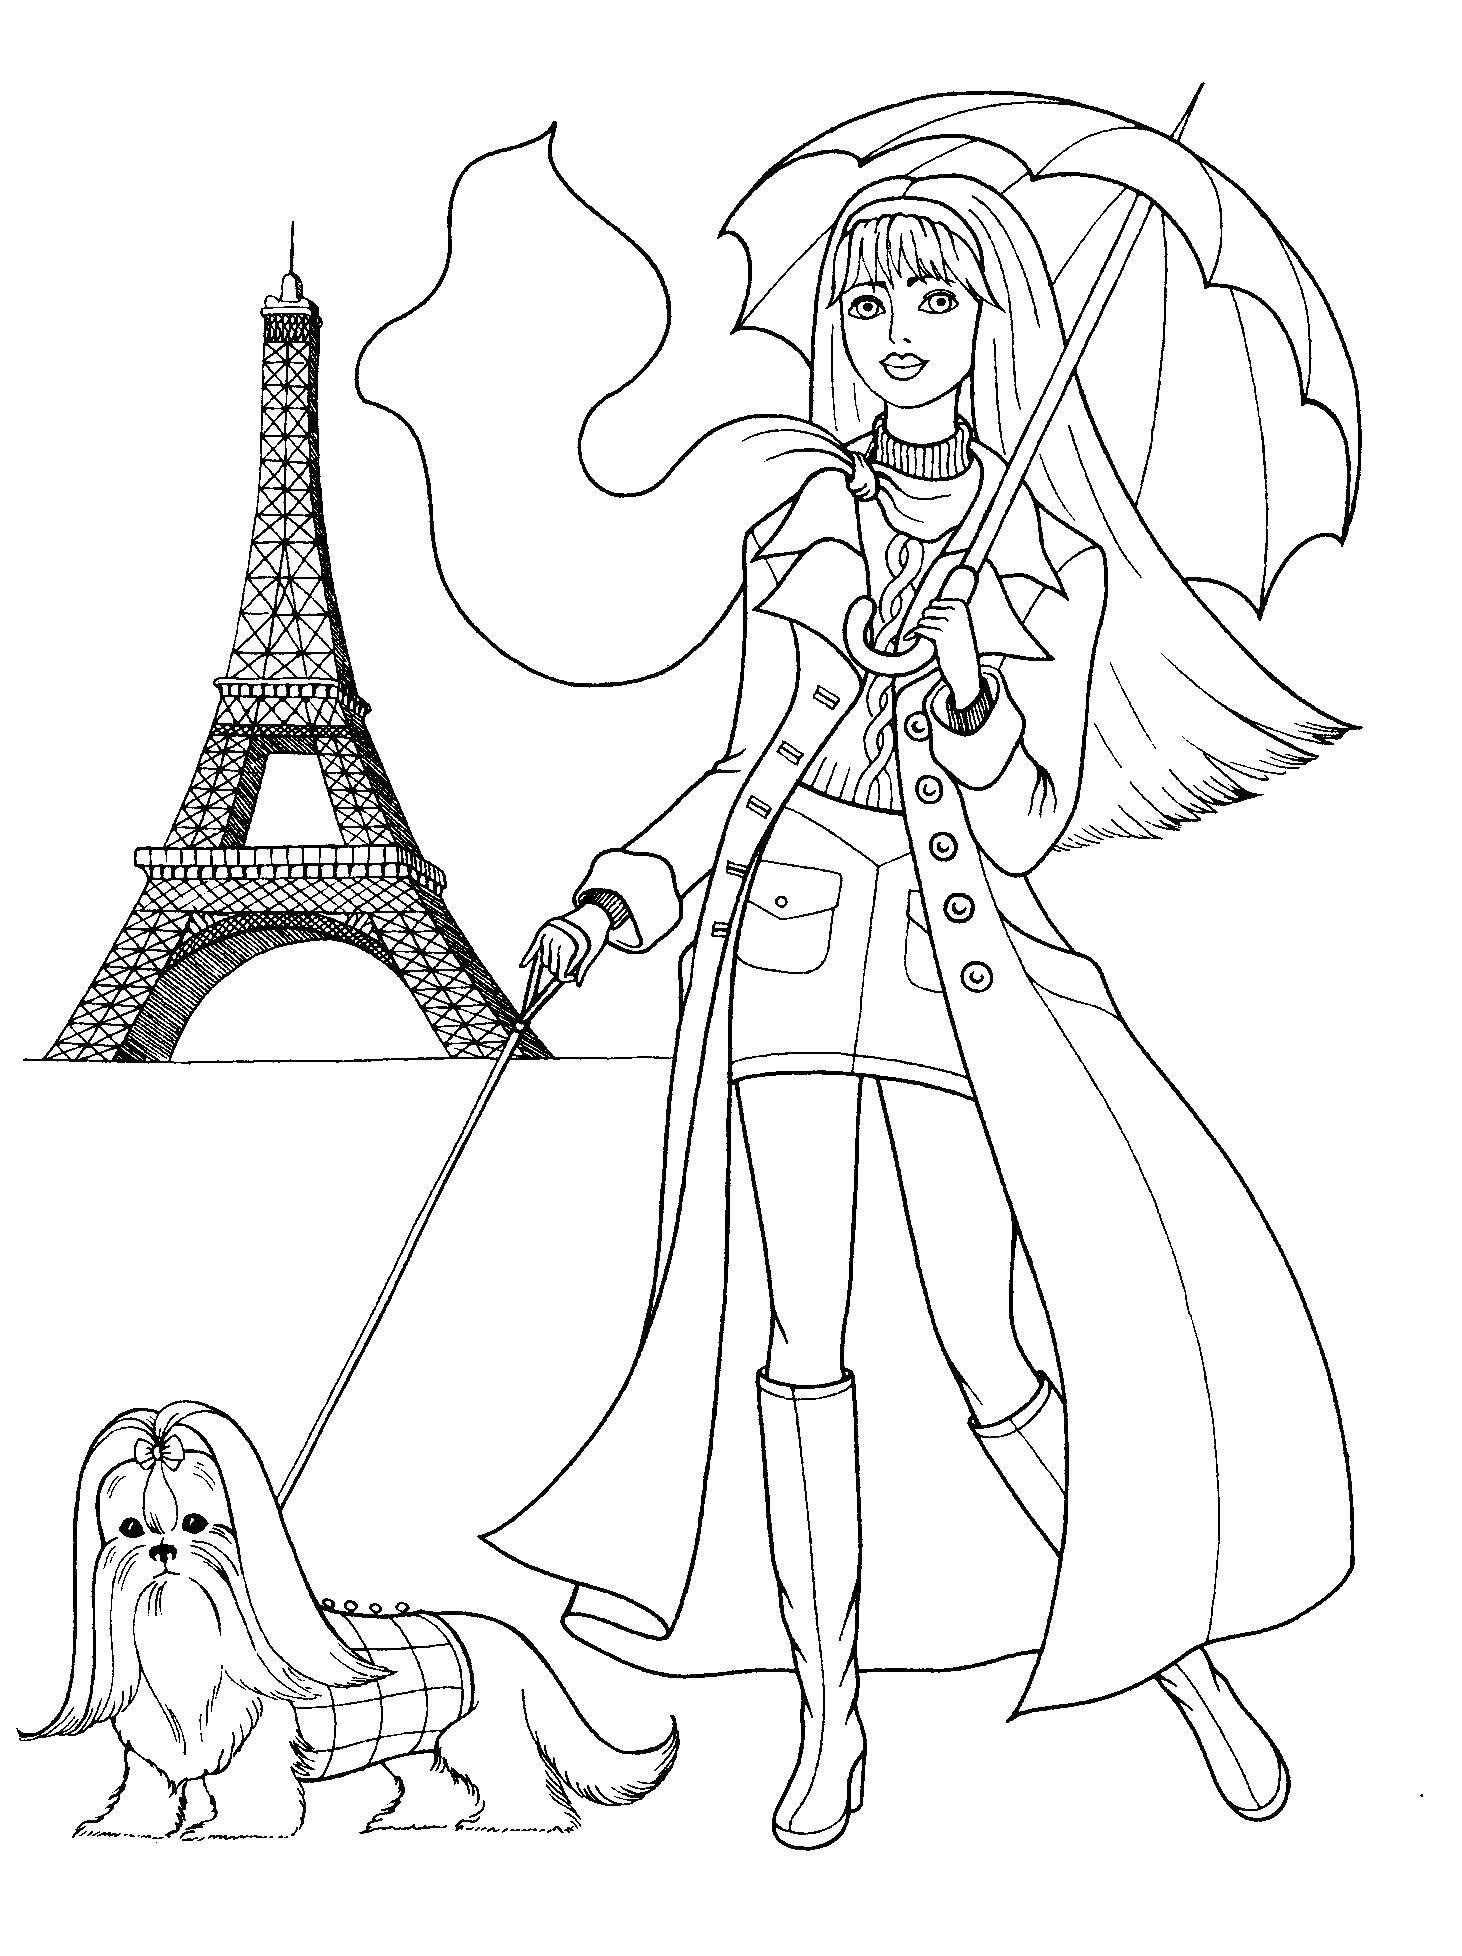 Название: Раскраска Девочка-барби с собачкой на фоне эльфелевой башни. Категория: раскраски для девочек. Теги: девочка, кукла, барби, Эльфелева башня.